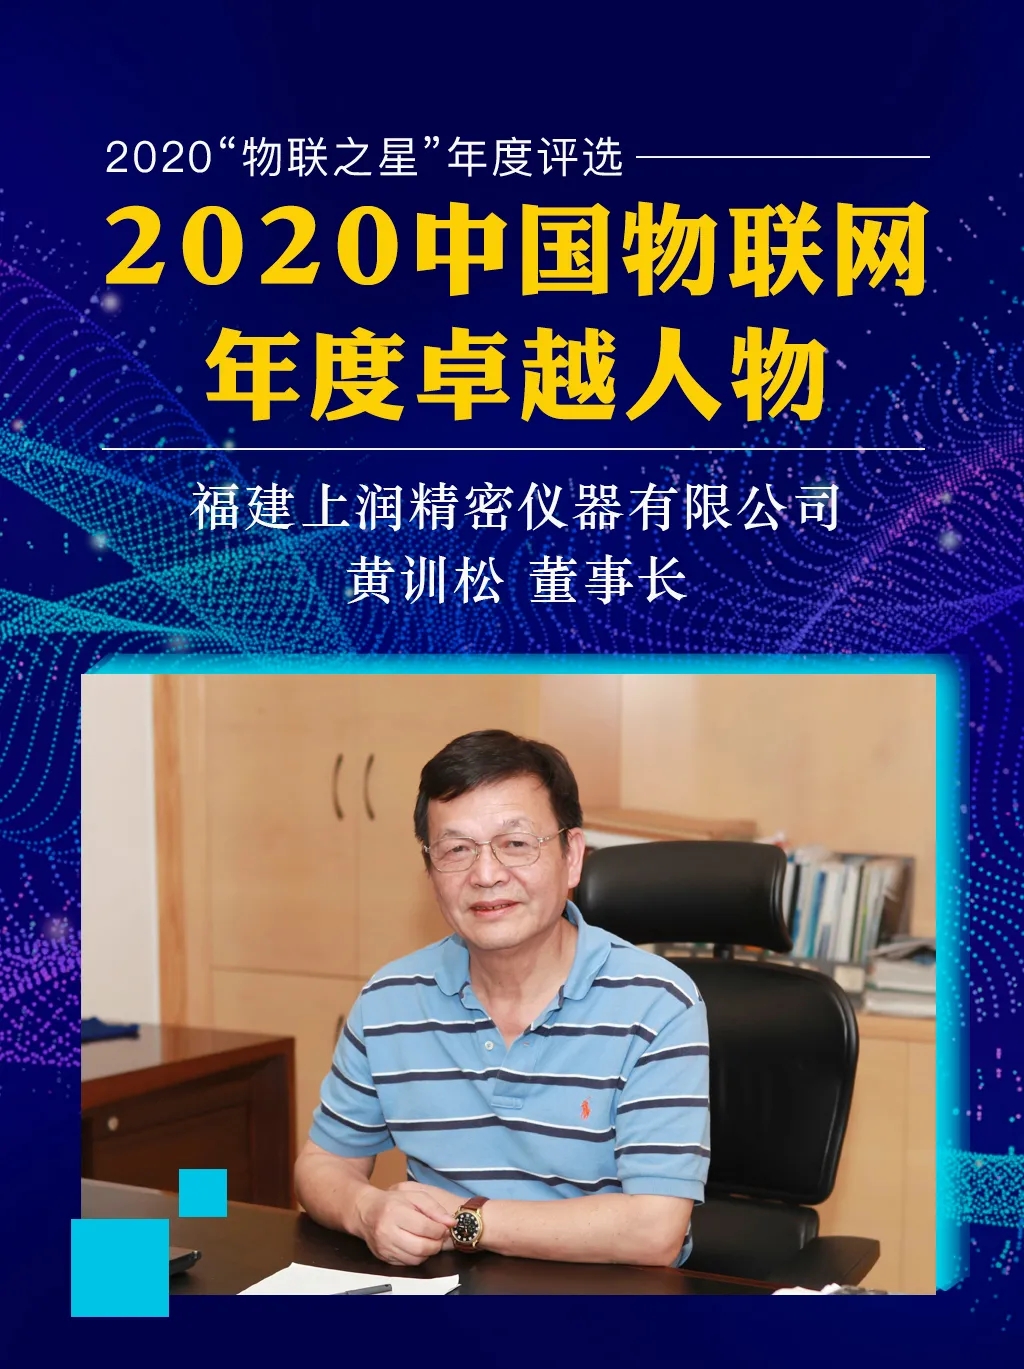 福建上润黄训松董事长入选“2020中国物联网年度卓越人物”